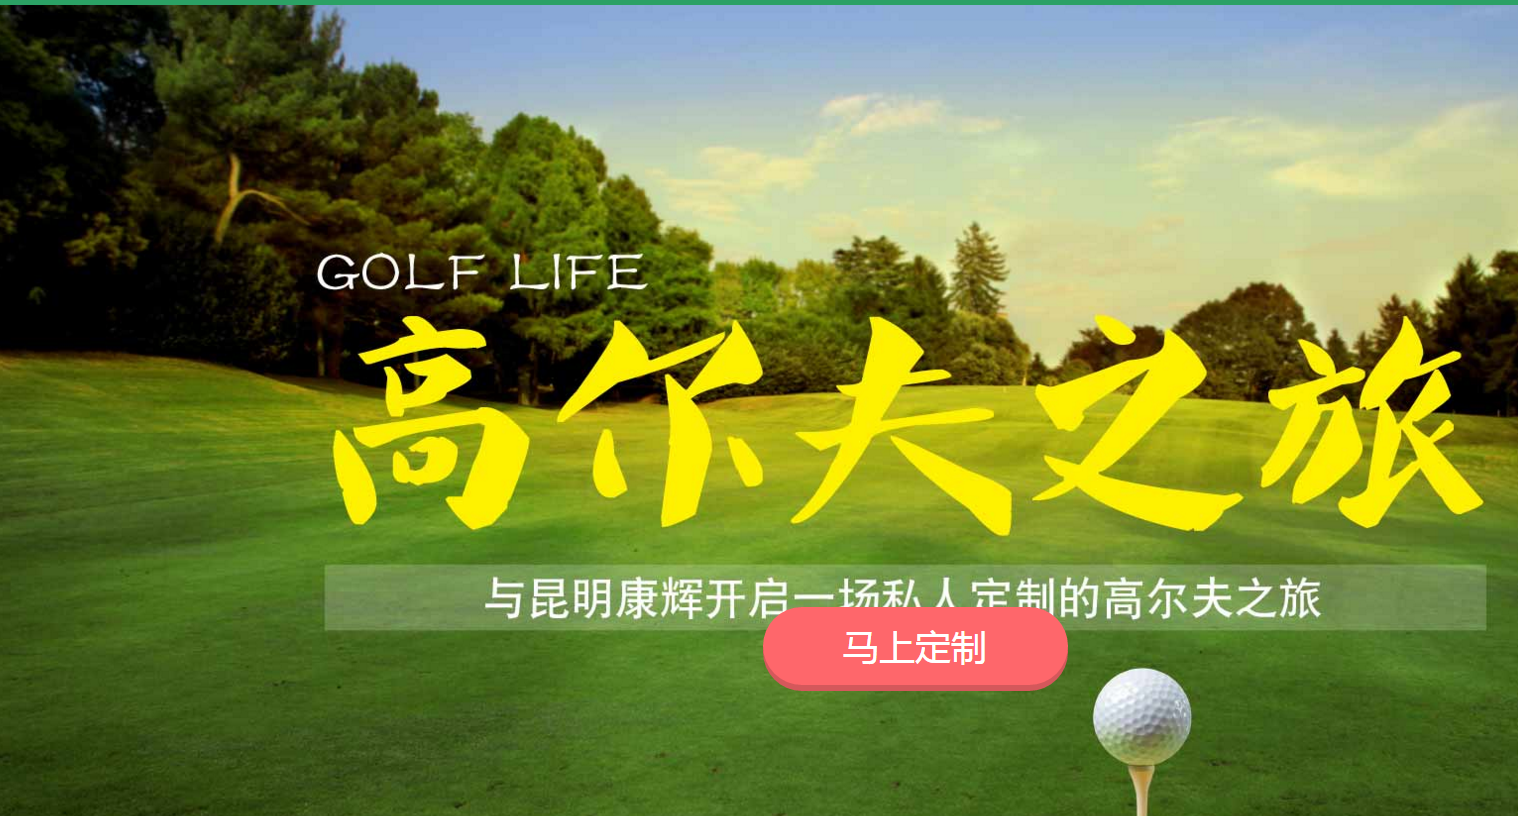 昆明云南高尔夫旅行公司_高尔夫用品相关